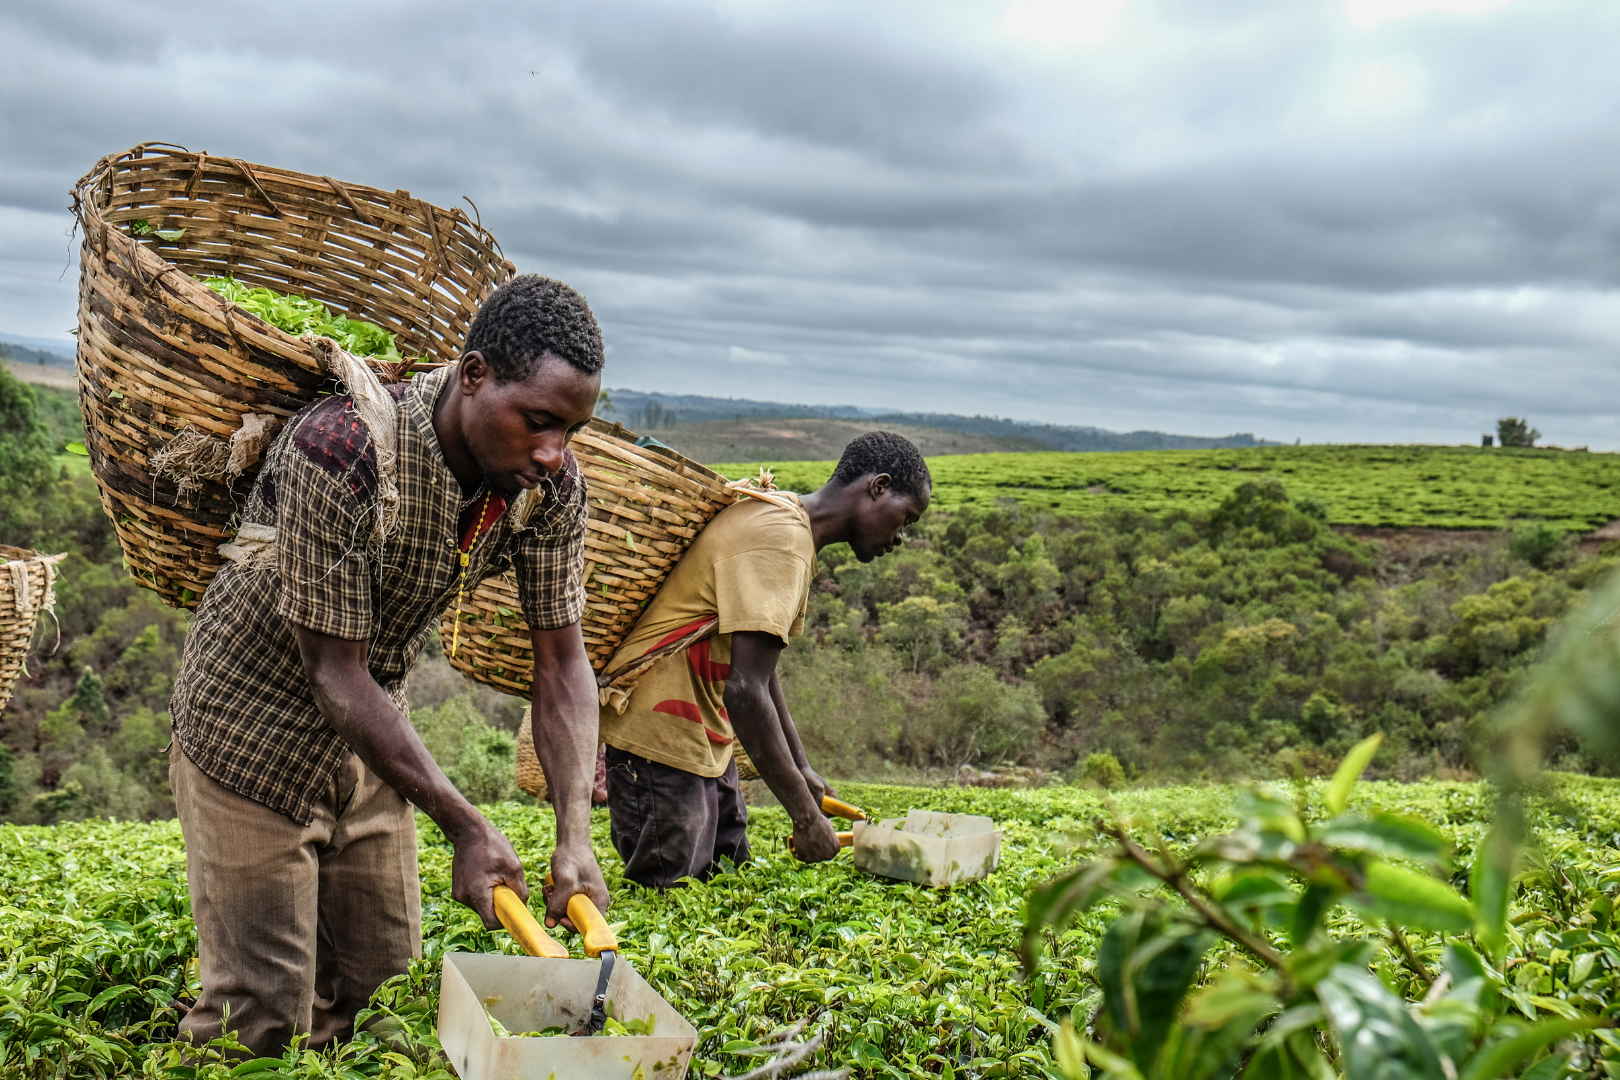 Plantations de thé avec l'arrière-plan des vastes paysages africains pour la sous-catégorie 'Aventure Africaine'.